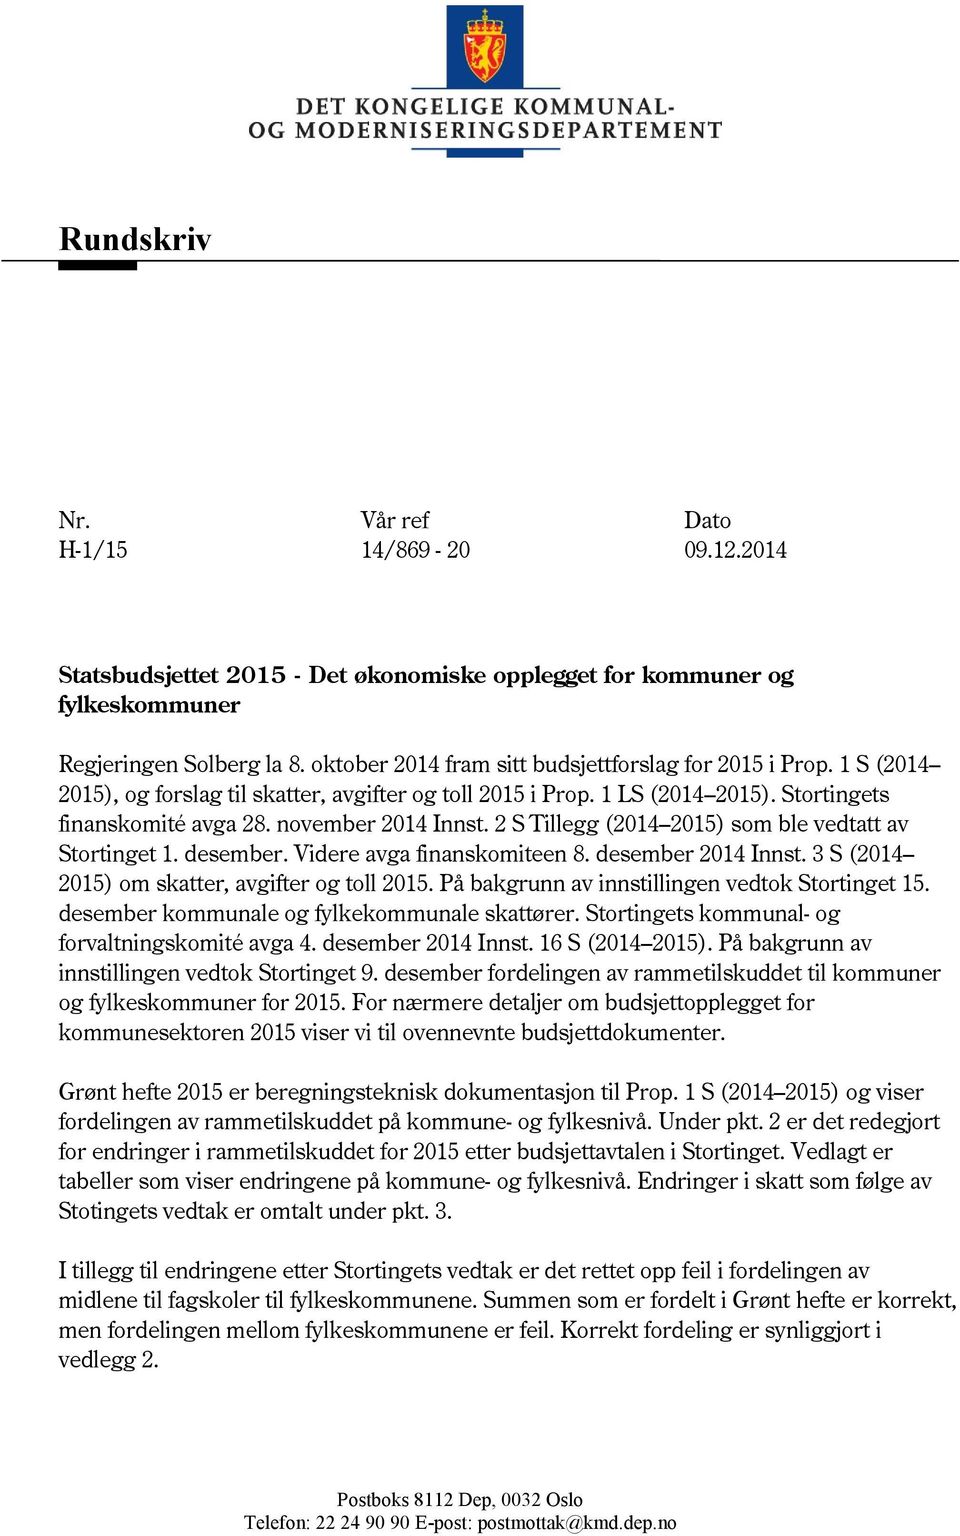 2 S Tillegg (2014 2015) som ble vedtatt av Stortinget 1. desember. Videre avga finanskomiteen 8. desember 2014 Innst. 3 S (2014 2015) om skatter, avgifter og toll 2015.